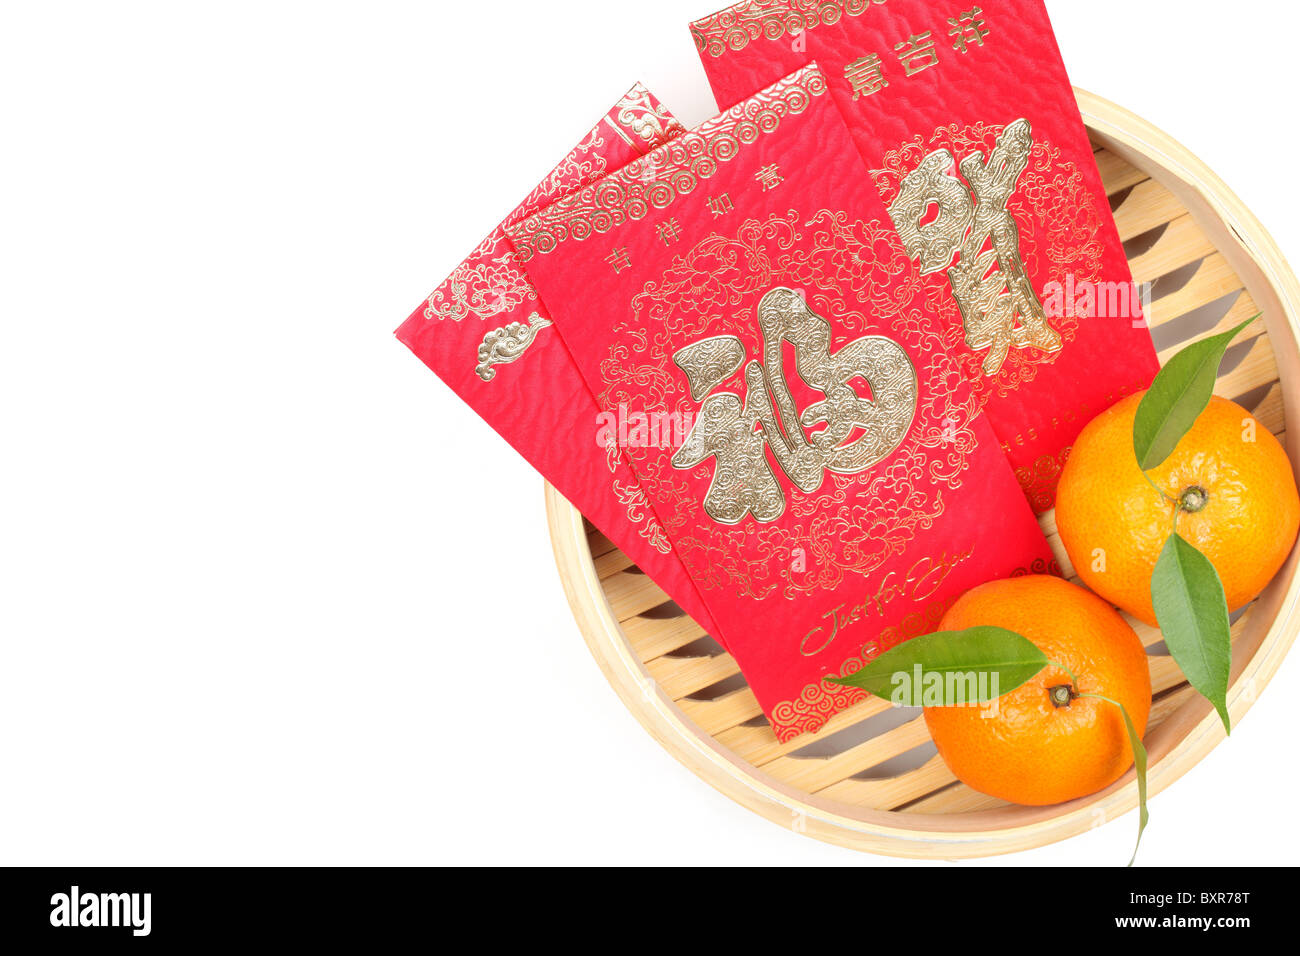 Mandarin-Orangen und roten Päckchen in Bambus essen steamer.character auf Paket symbolisiert Glück. Stockfoto